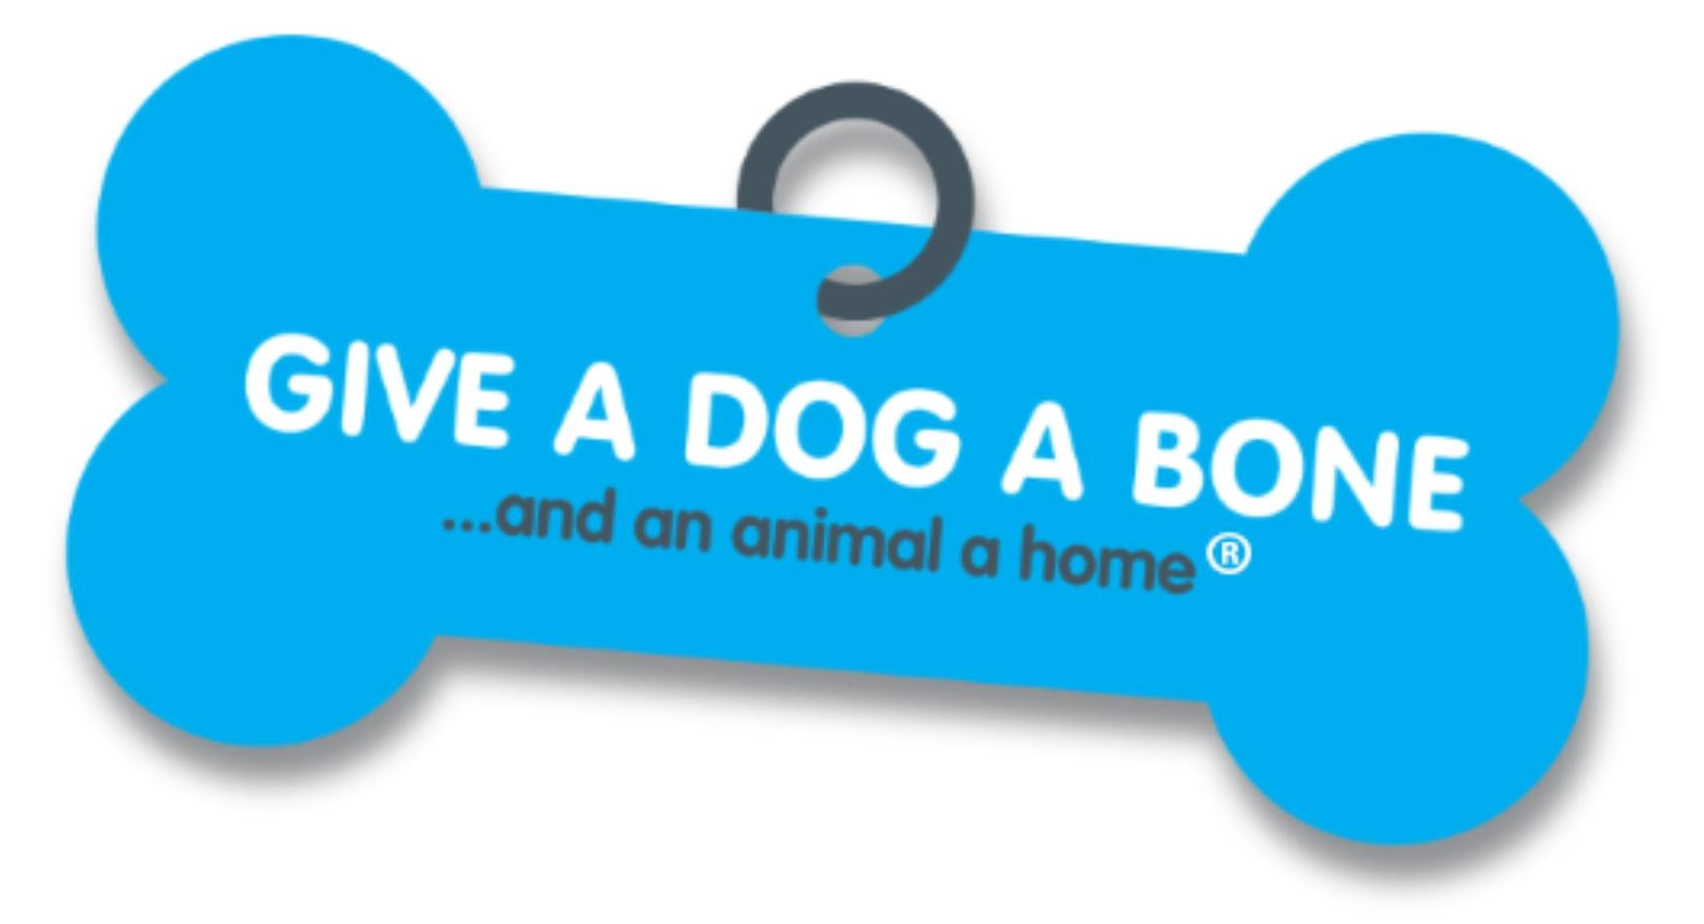 Give a dog a bone logo